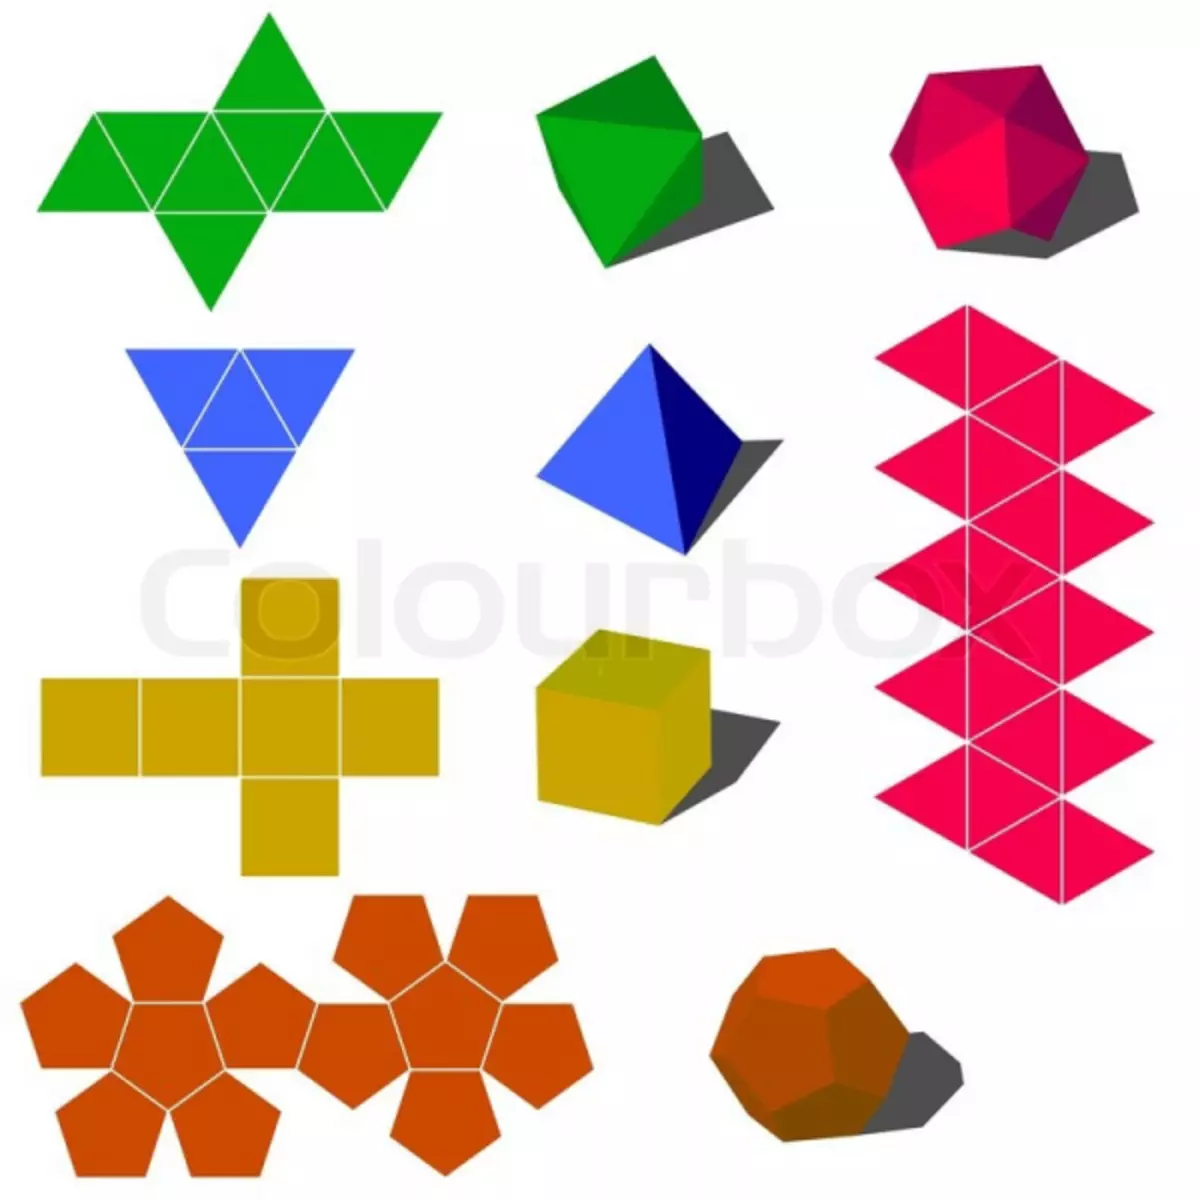 Fòm jewometrik soti nan papye: Nou fè yon navèt nan teknik la origami